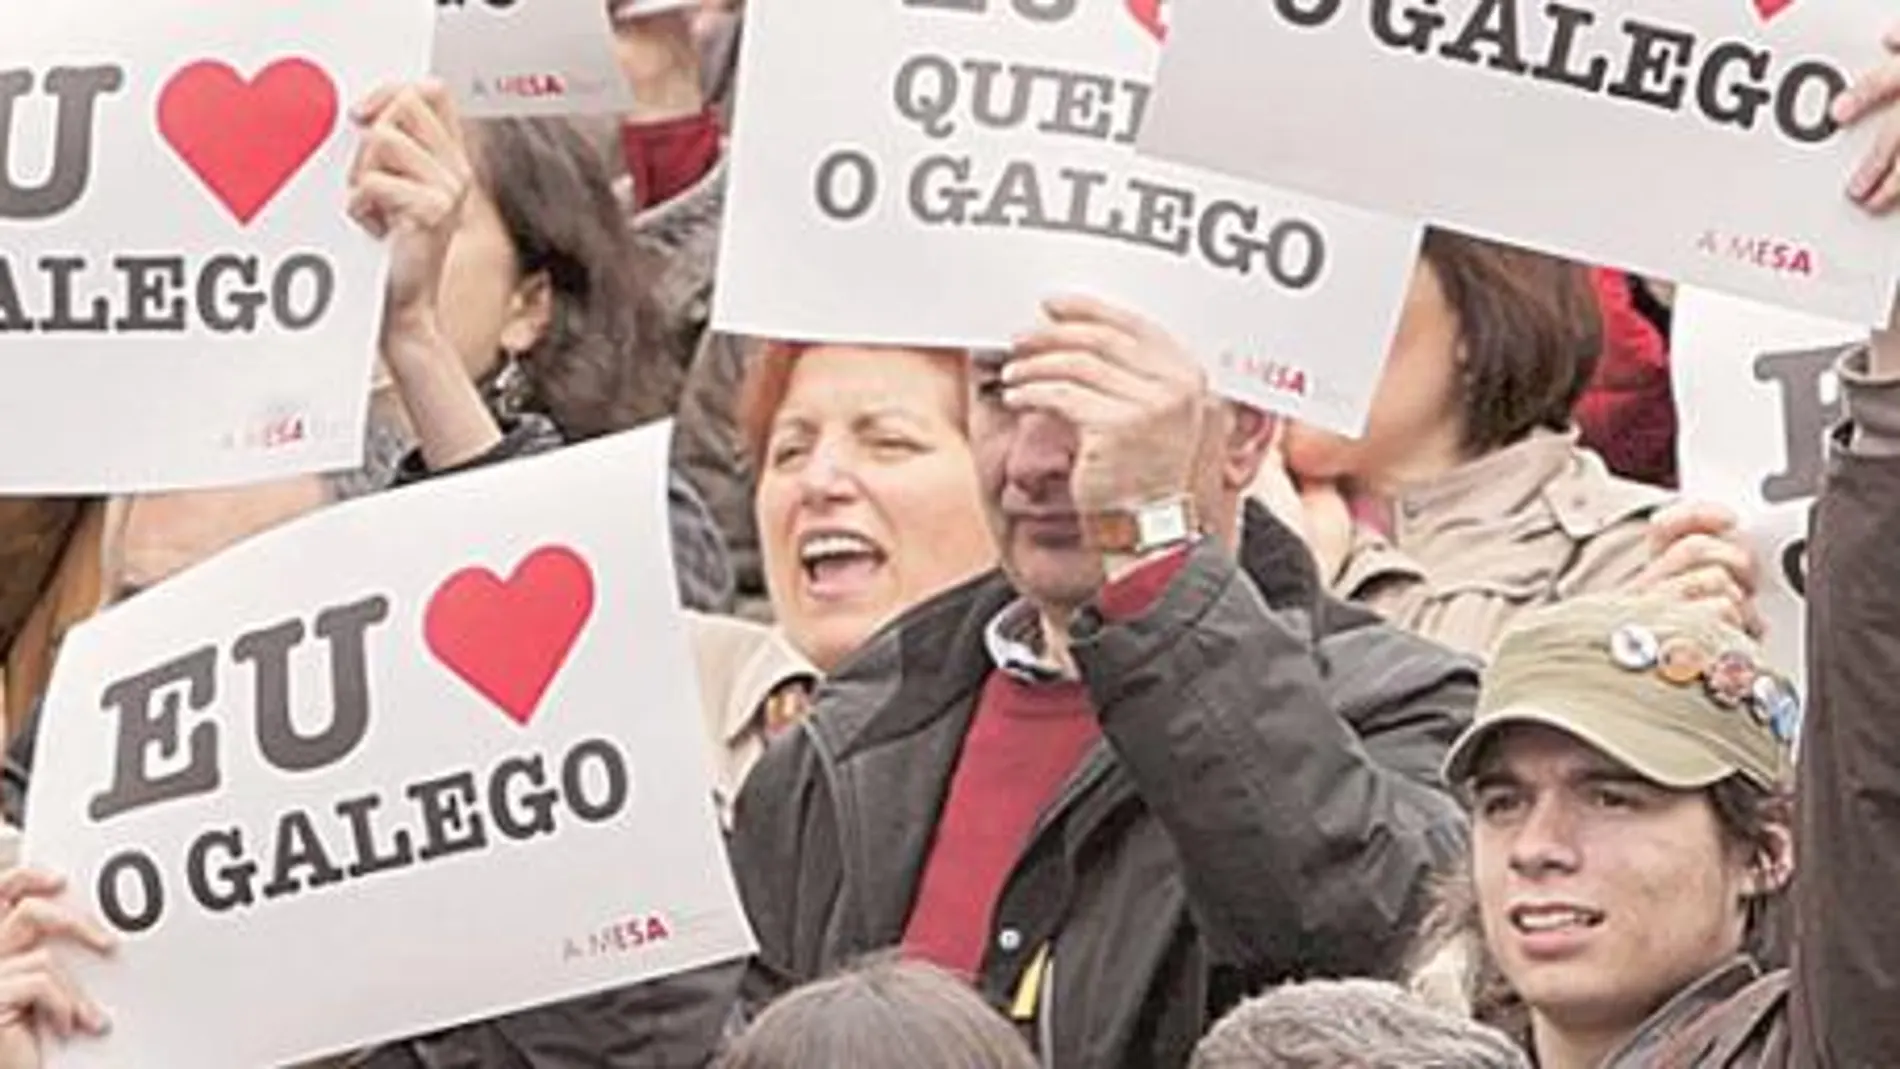 El BNG atiza la primera protesta contra Feijóo a cuenta del gallego